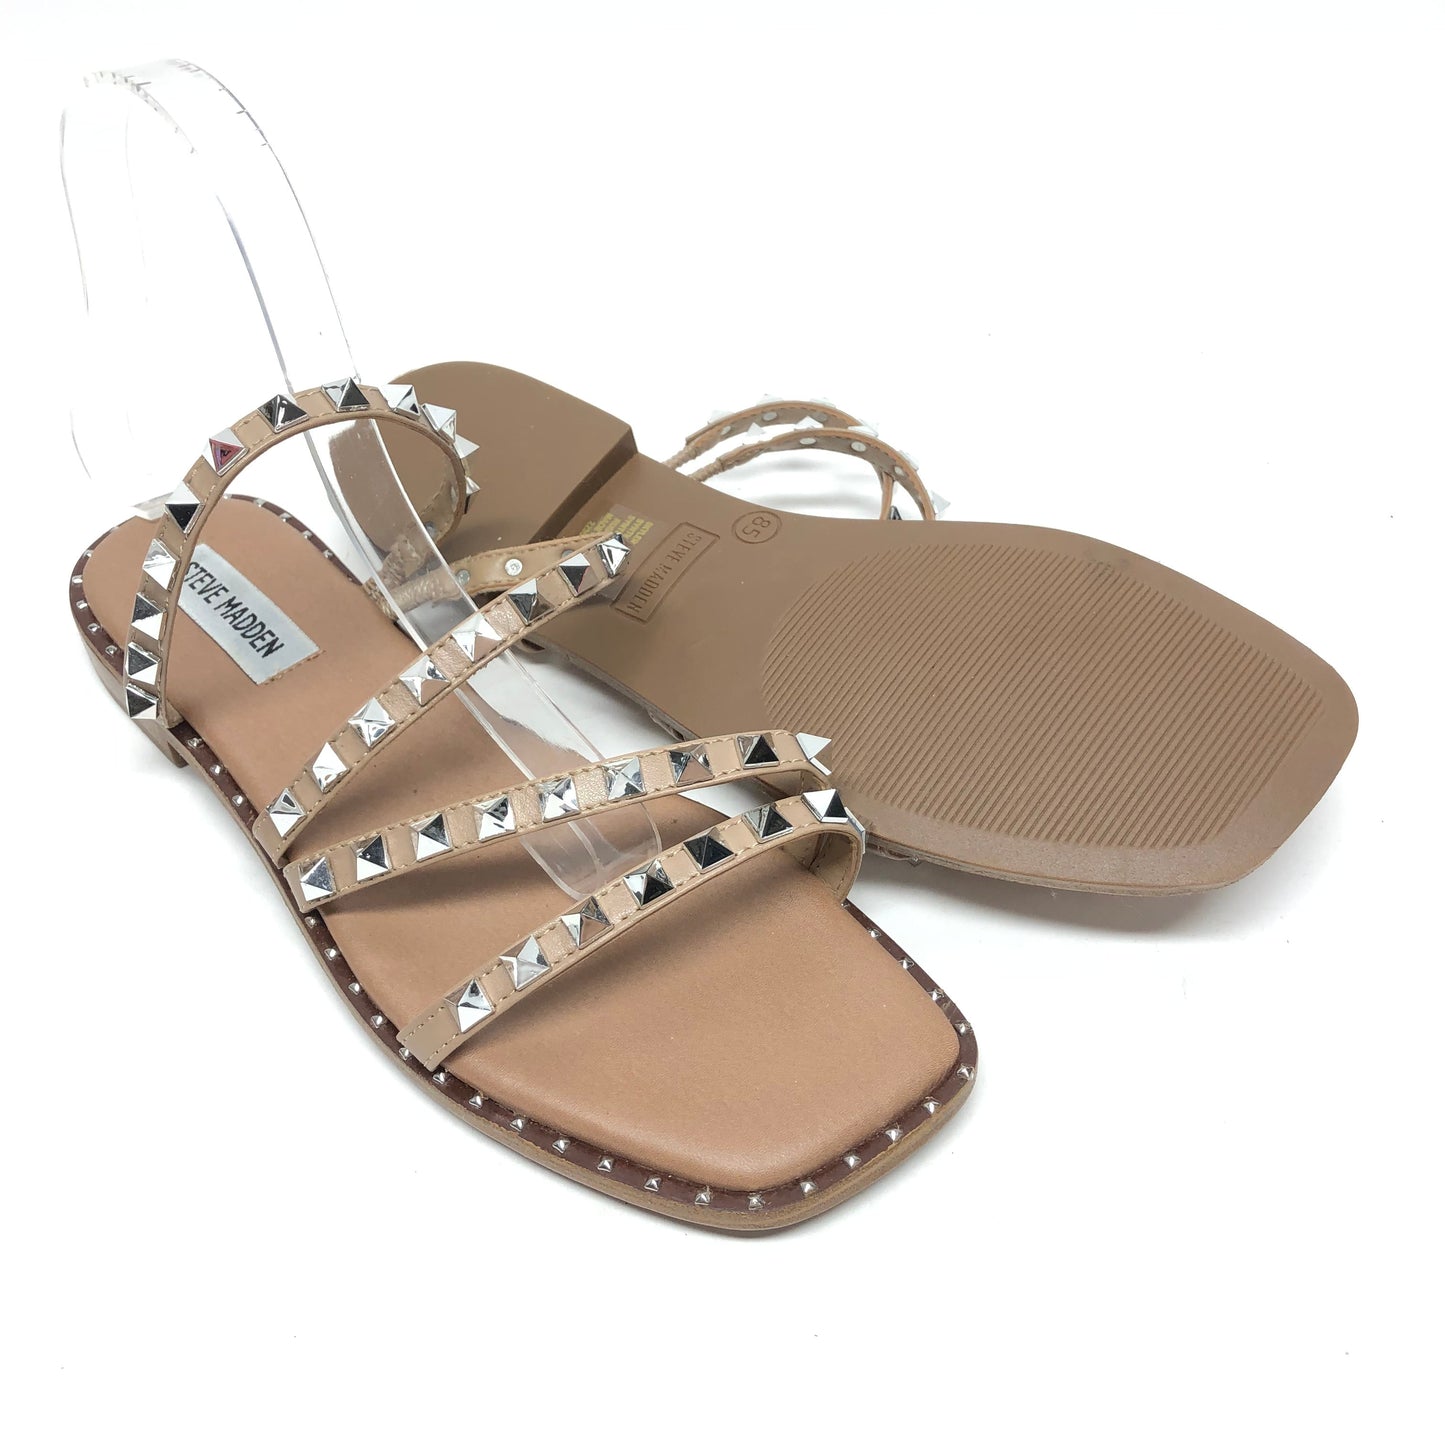 Silver & Tan Sandals Flats Steve Madden, Size 8.5